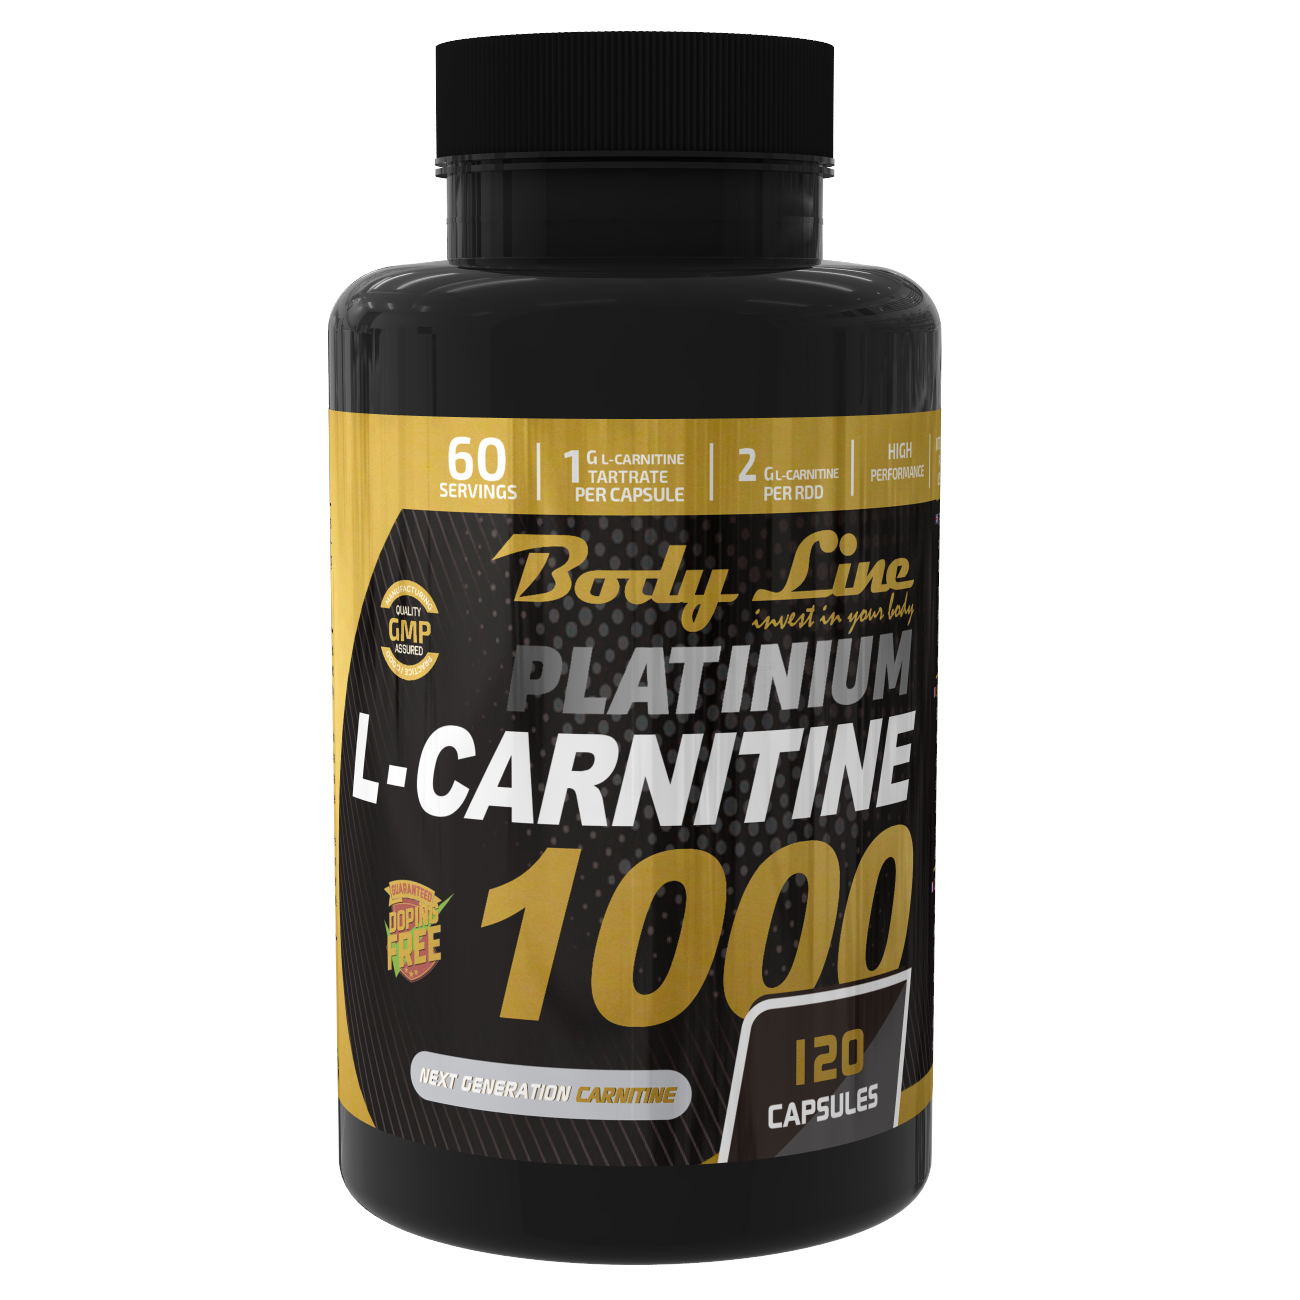 PLATINIUM L- CARNITINE 1000